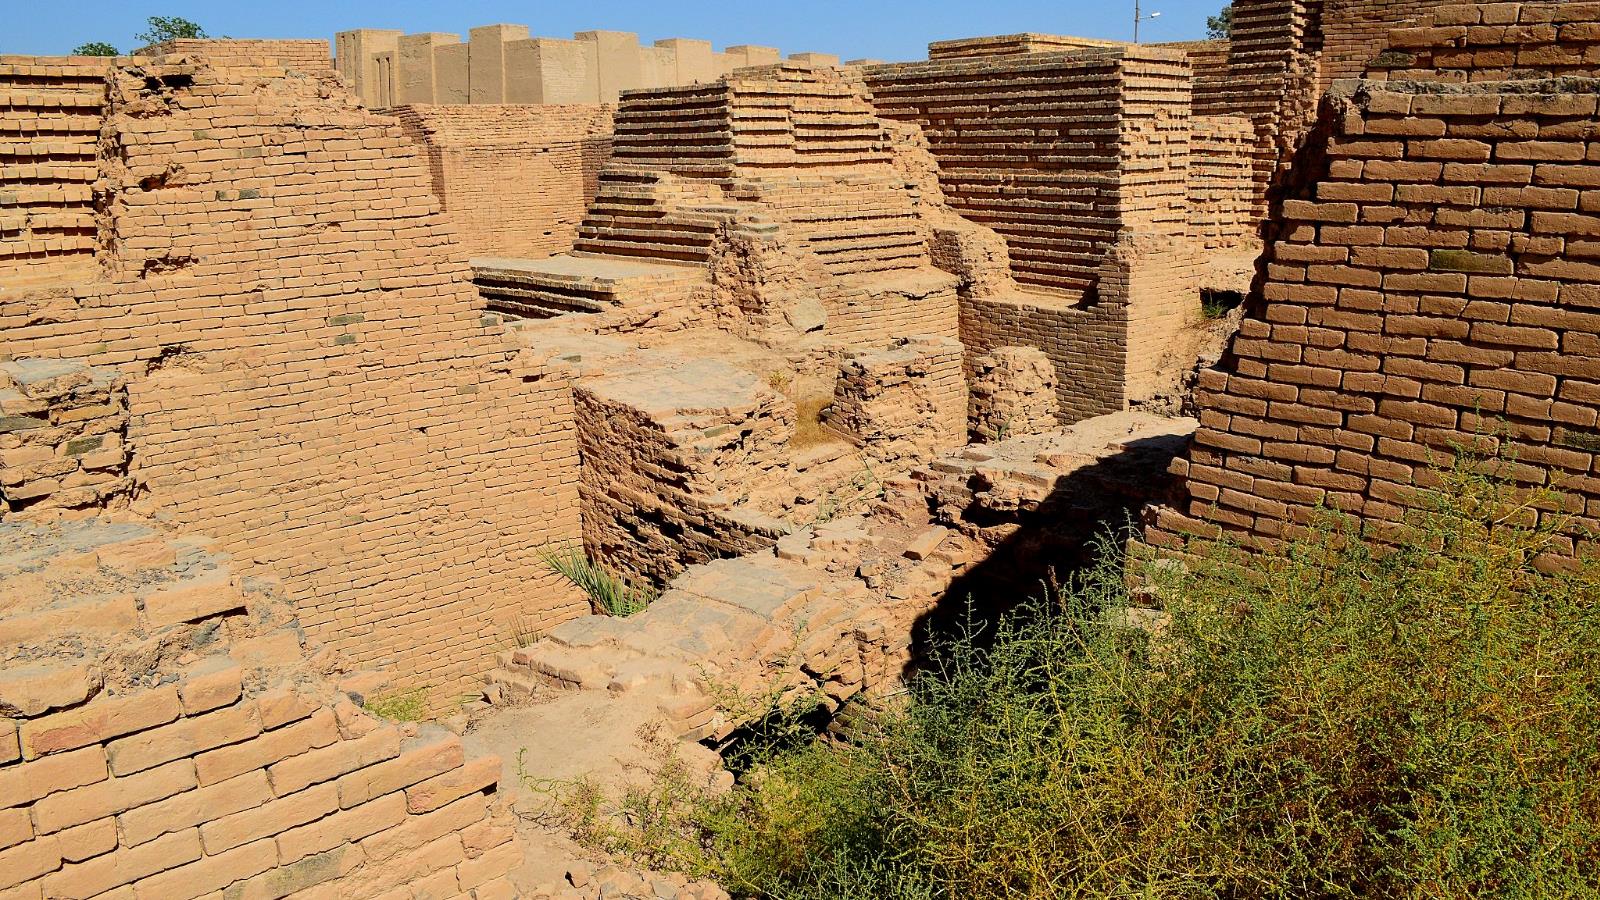 بقايا آثار بابلية من القرن السادس قبل الميلاد (ويكيميديا كومونز)